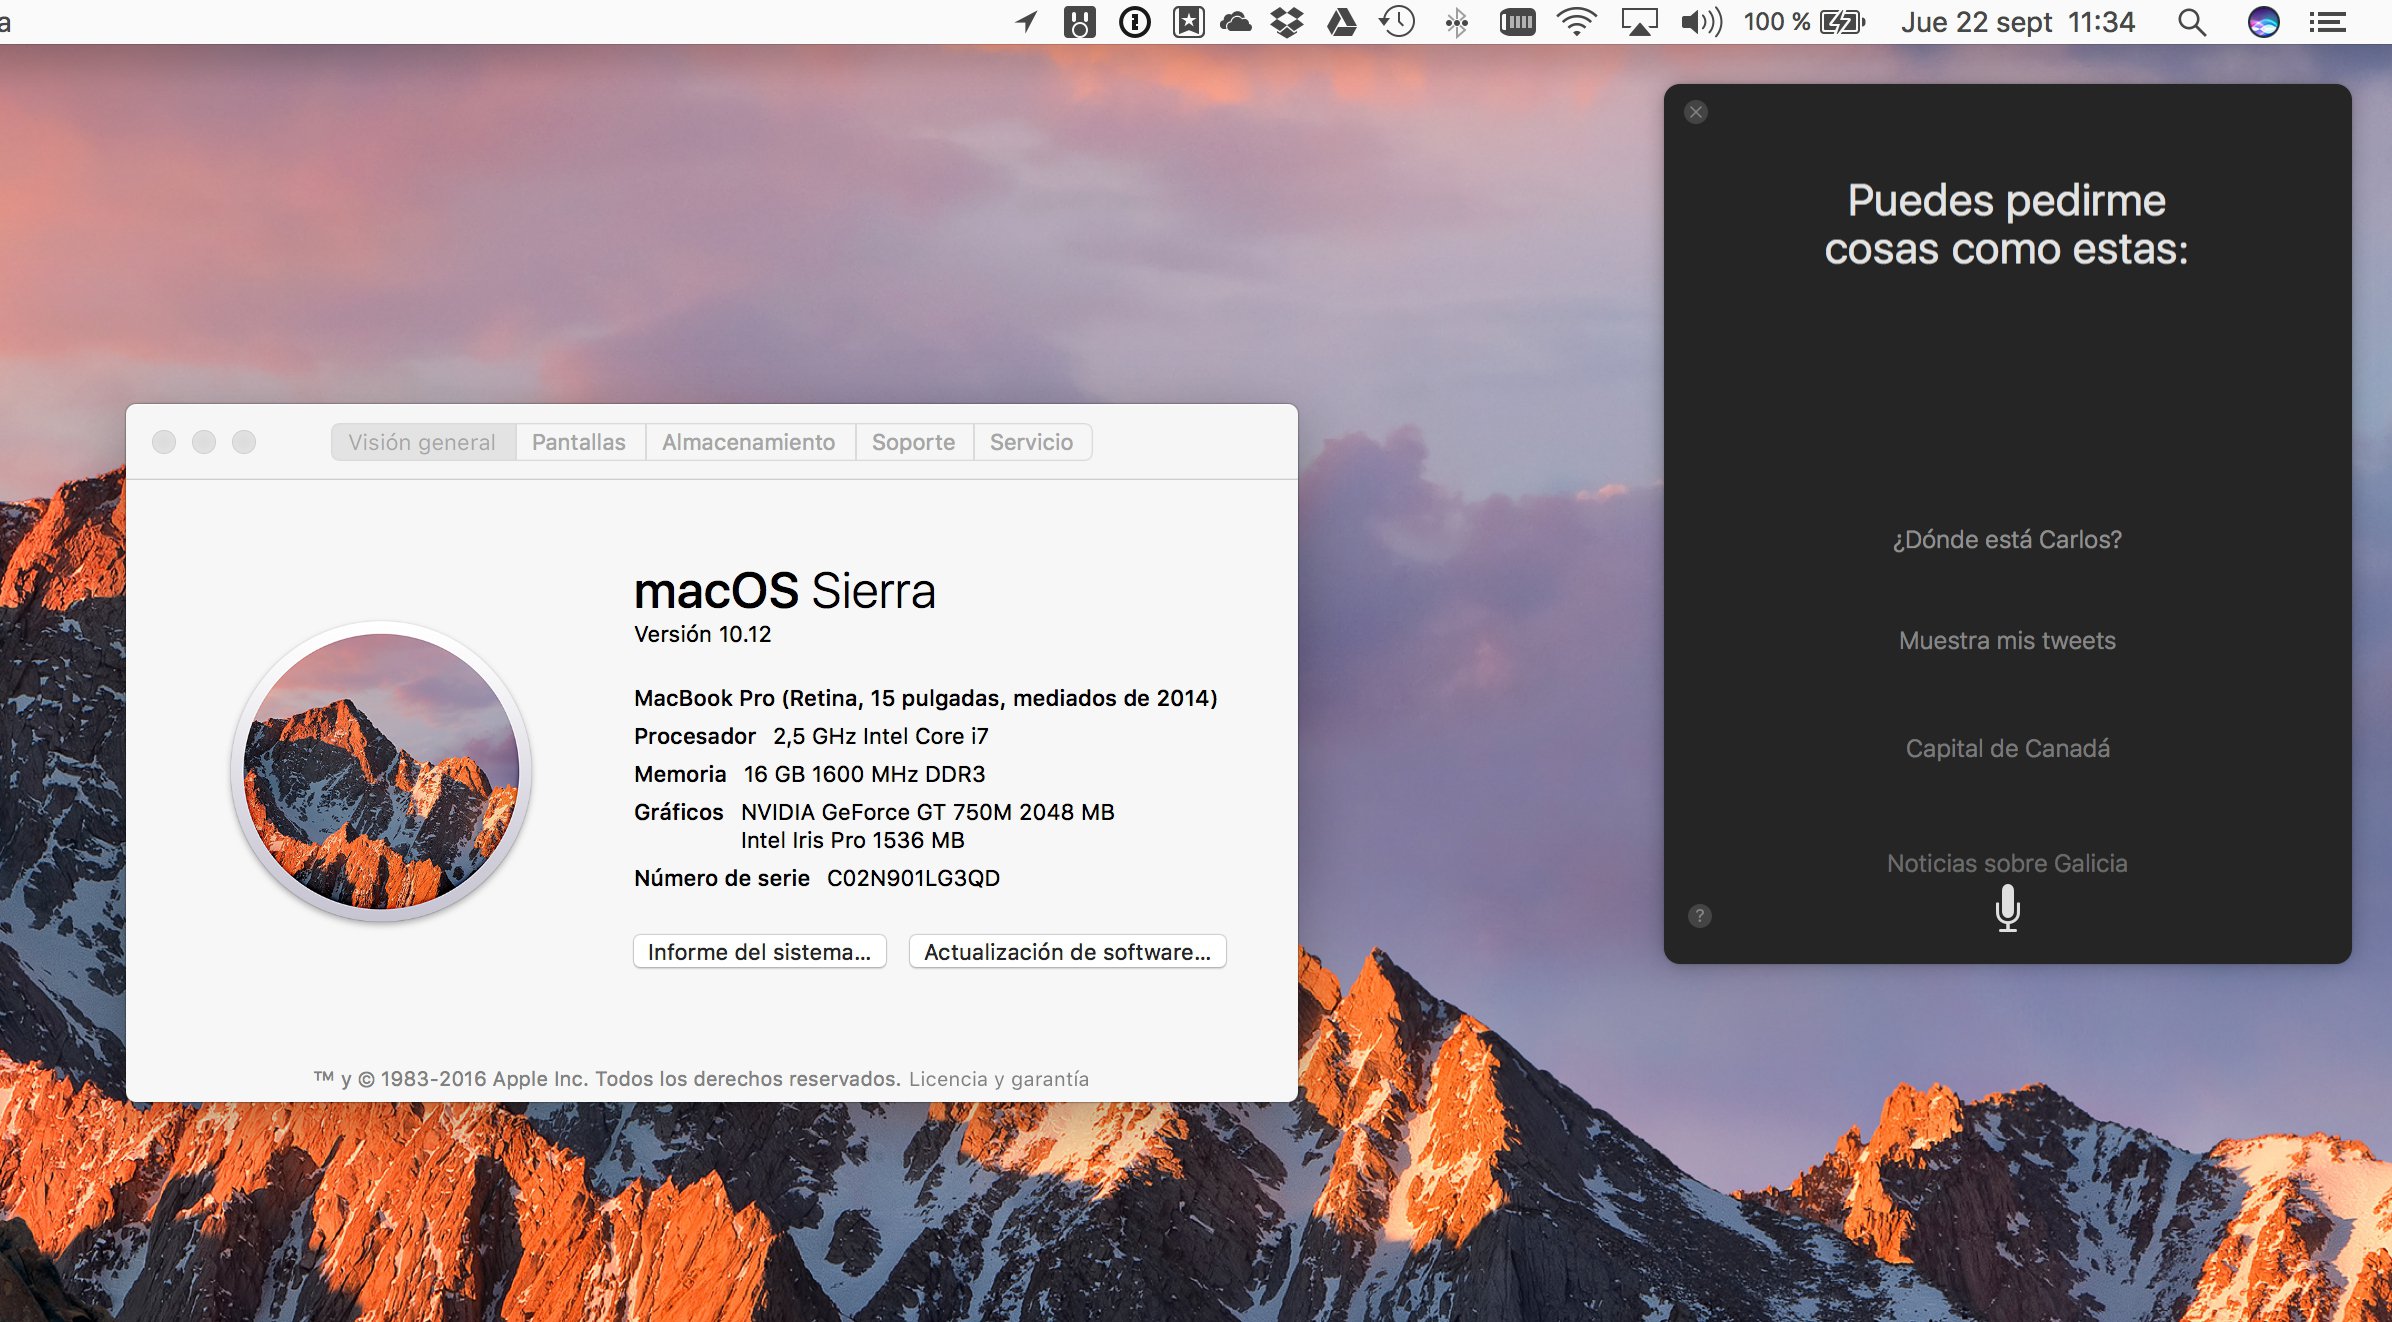 mac os sierra 10.12.6 for virtualbox